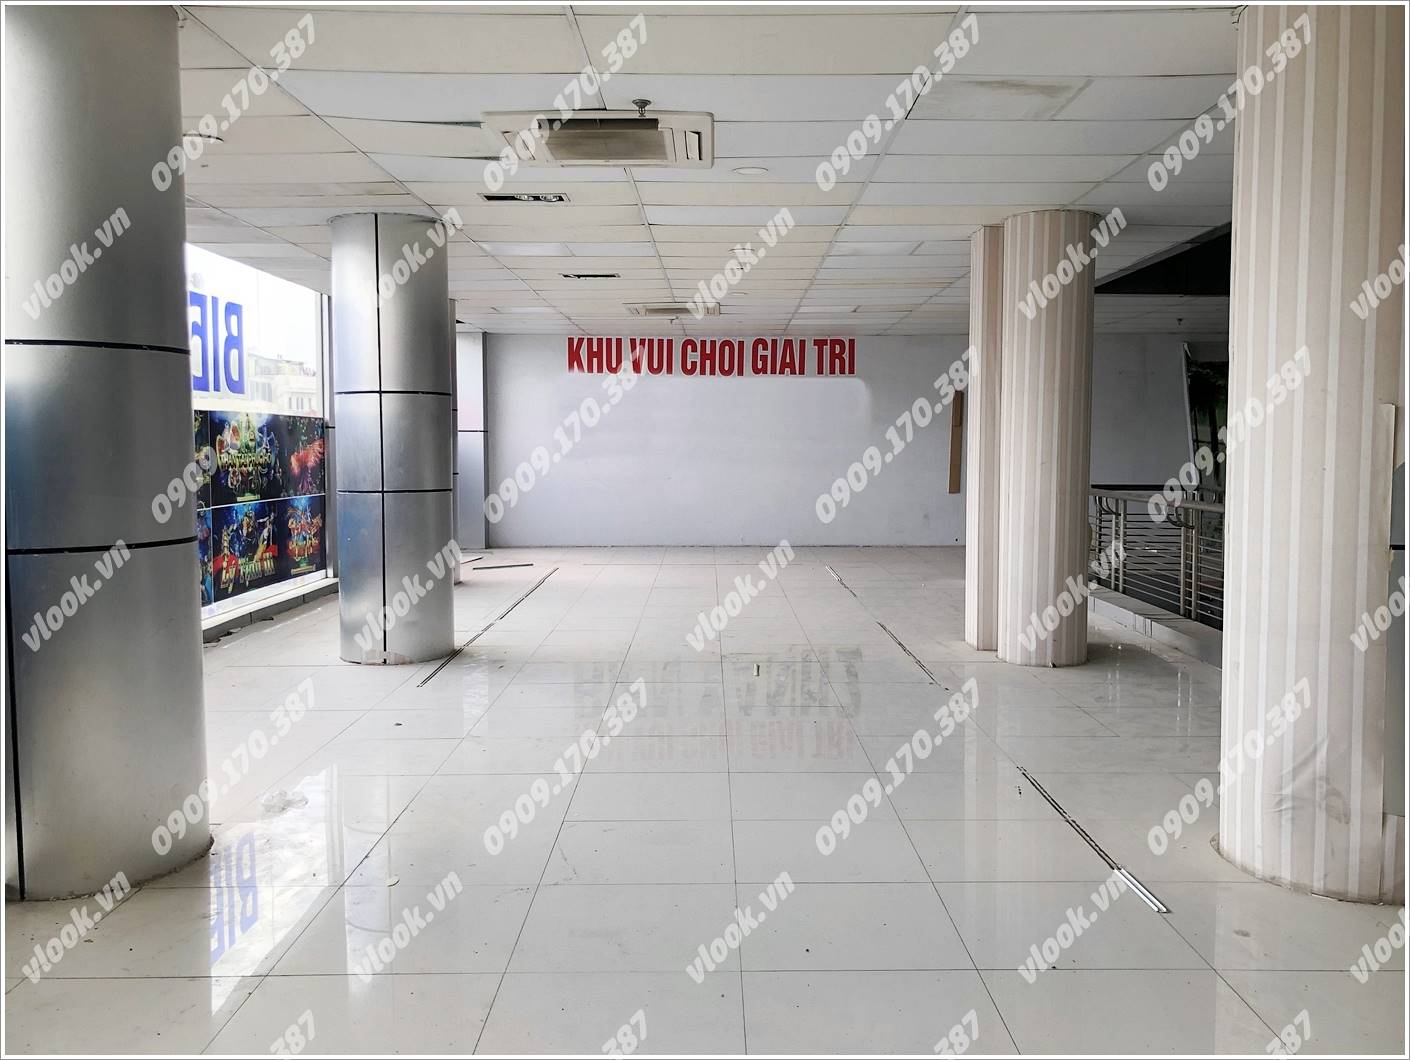 Cao ốc văn phòng cho thuê Phan Khang Building , Hoàng Văn Thụ, Quận Tân Bình - vlook.vn